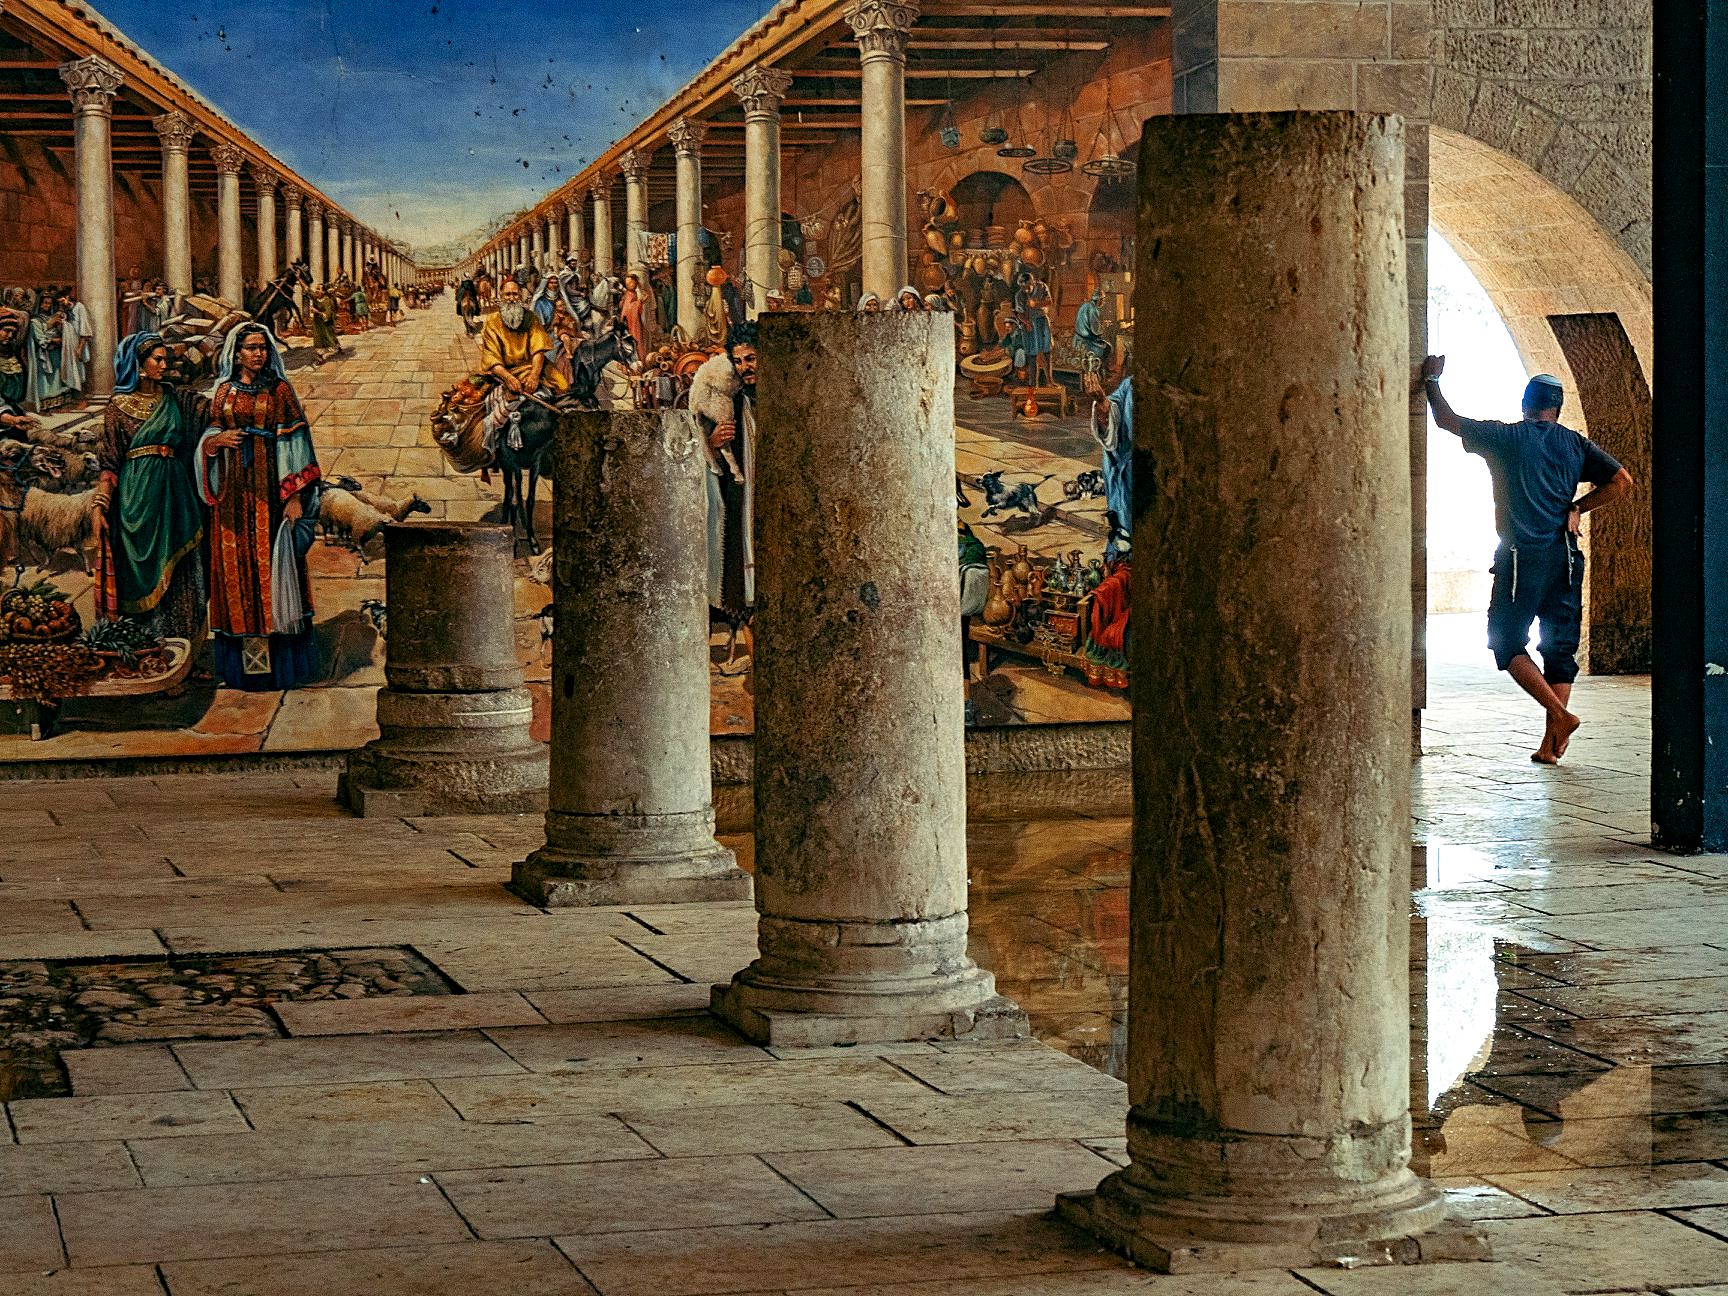 Byzantine Cardo in the Old City of Jerusalem